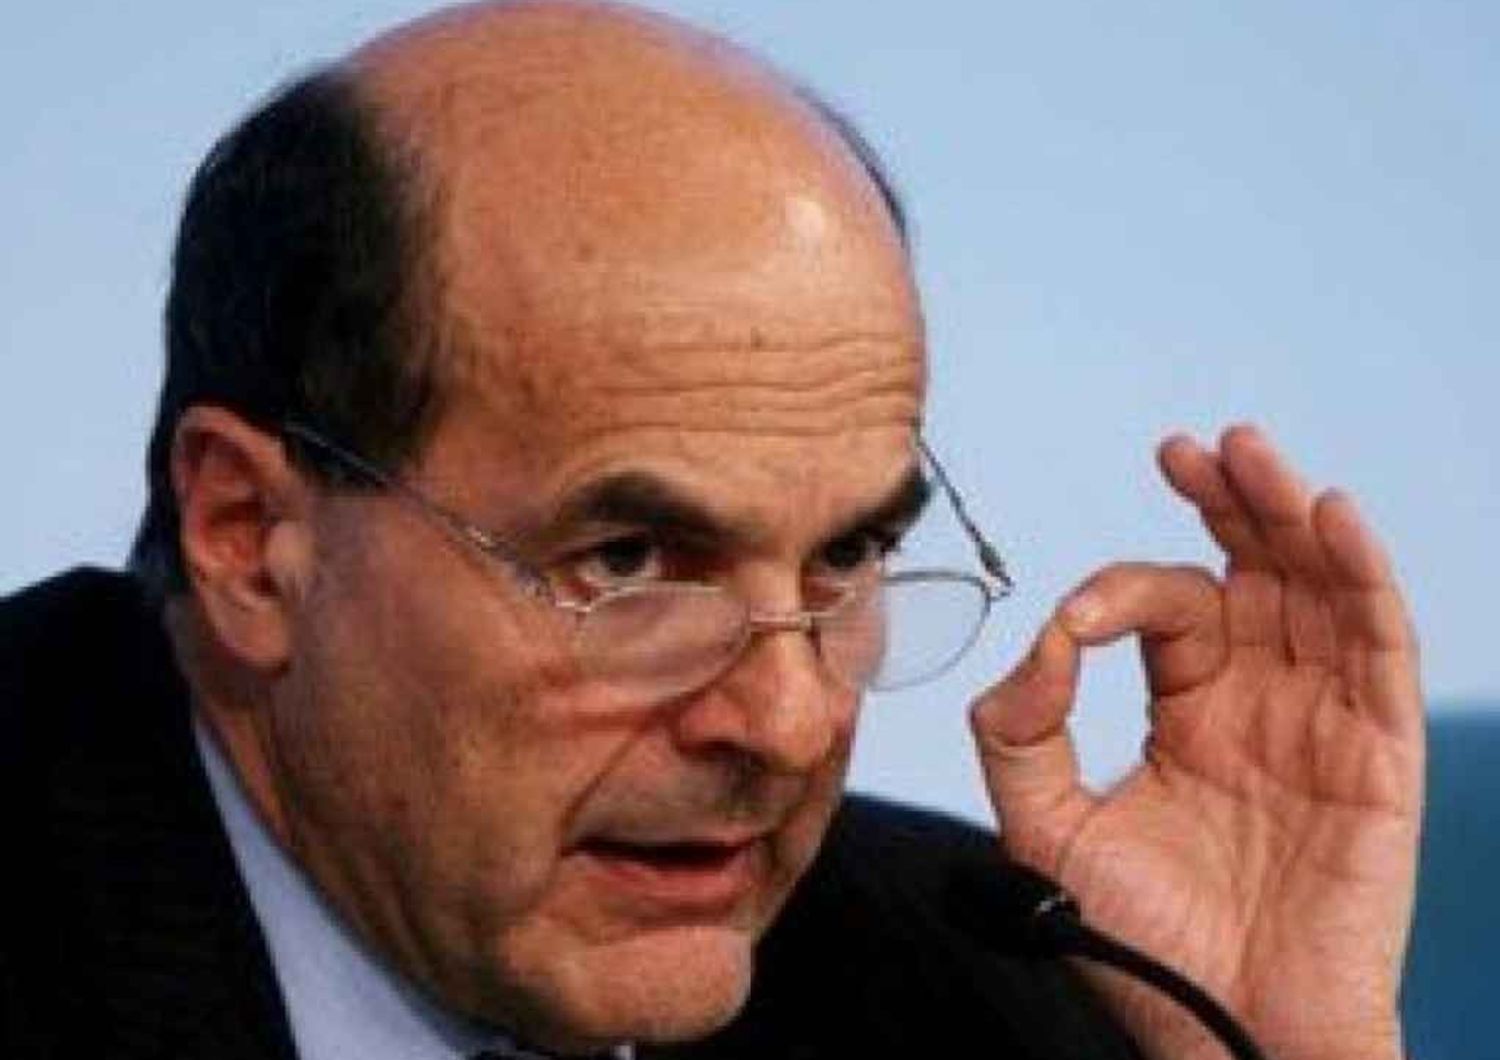 Lavoro, Bersani apre al governo"Sul voto finale saro' leale"